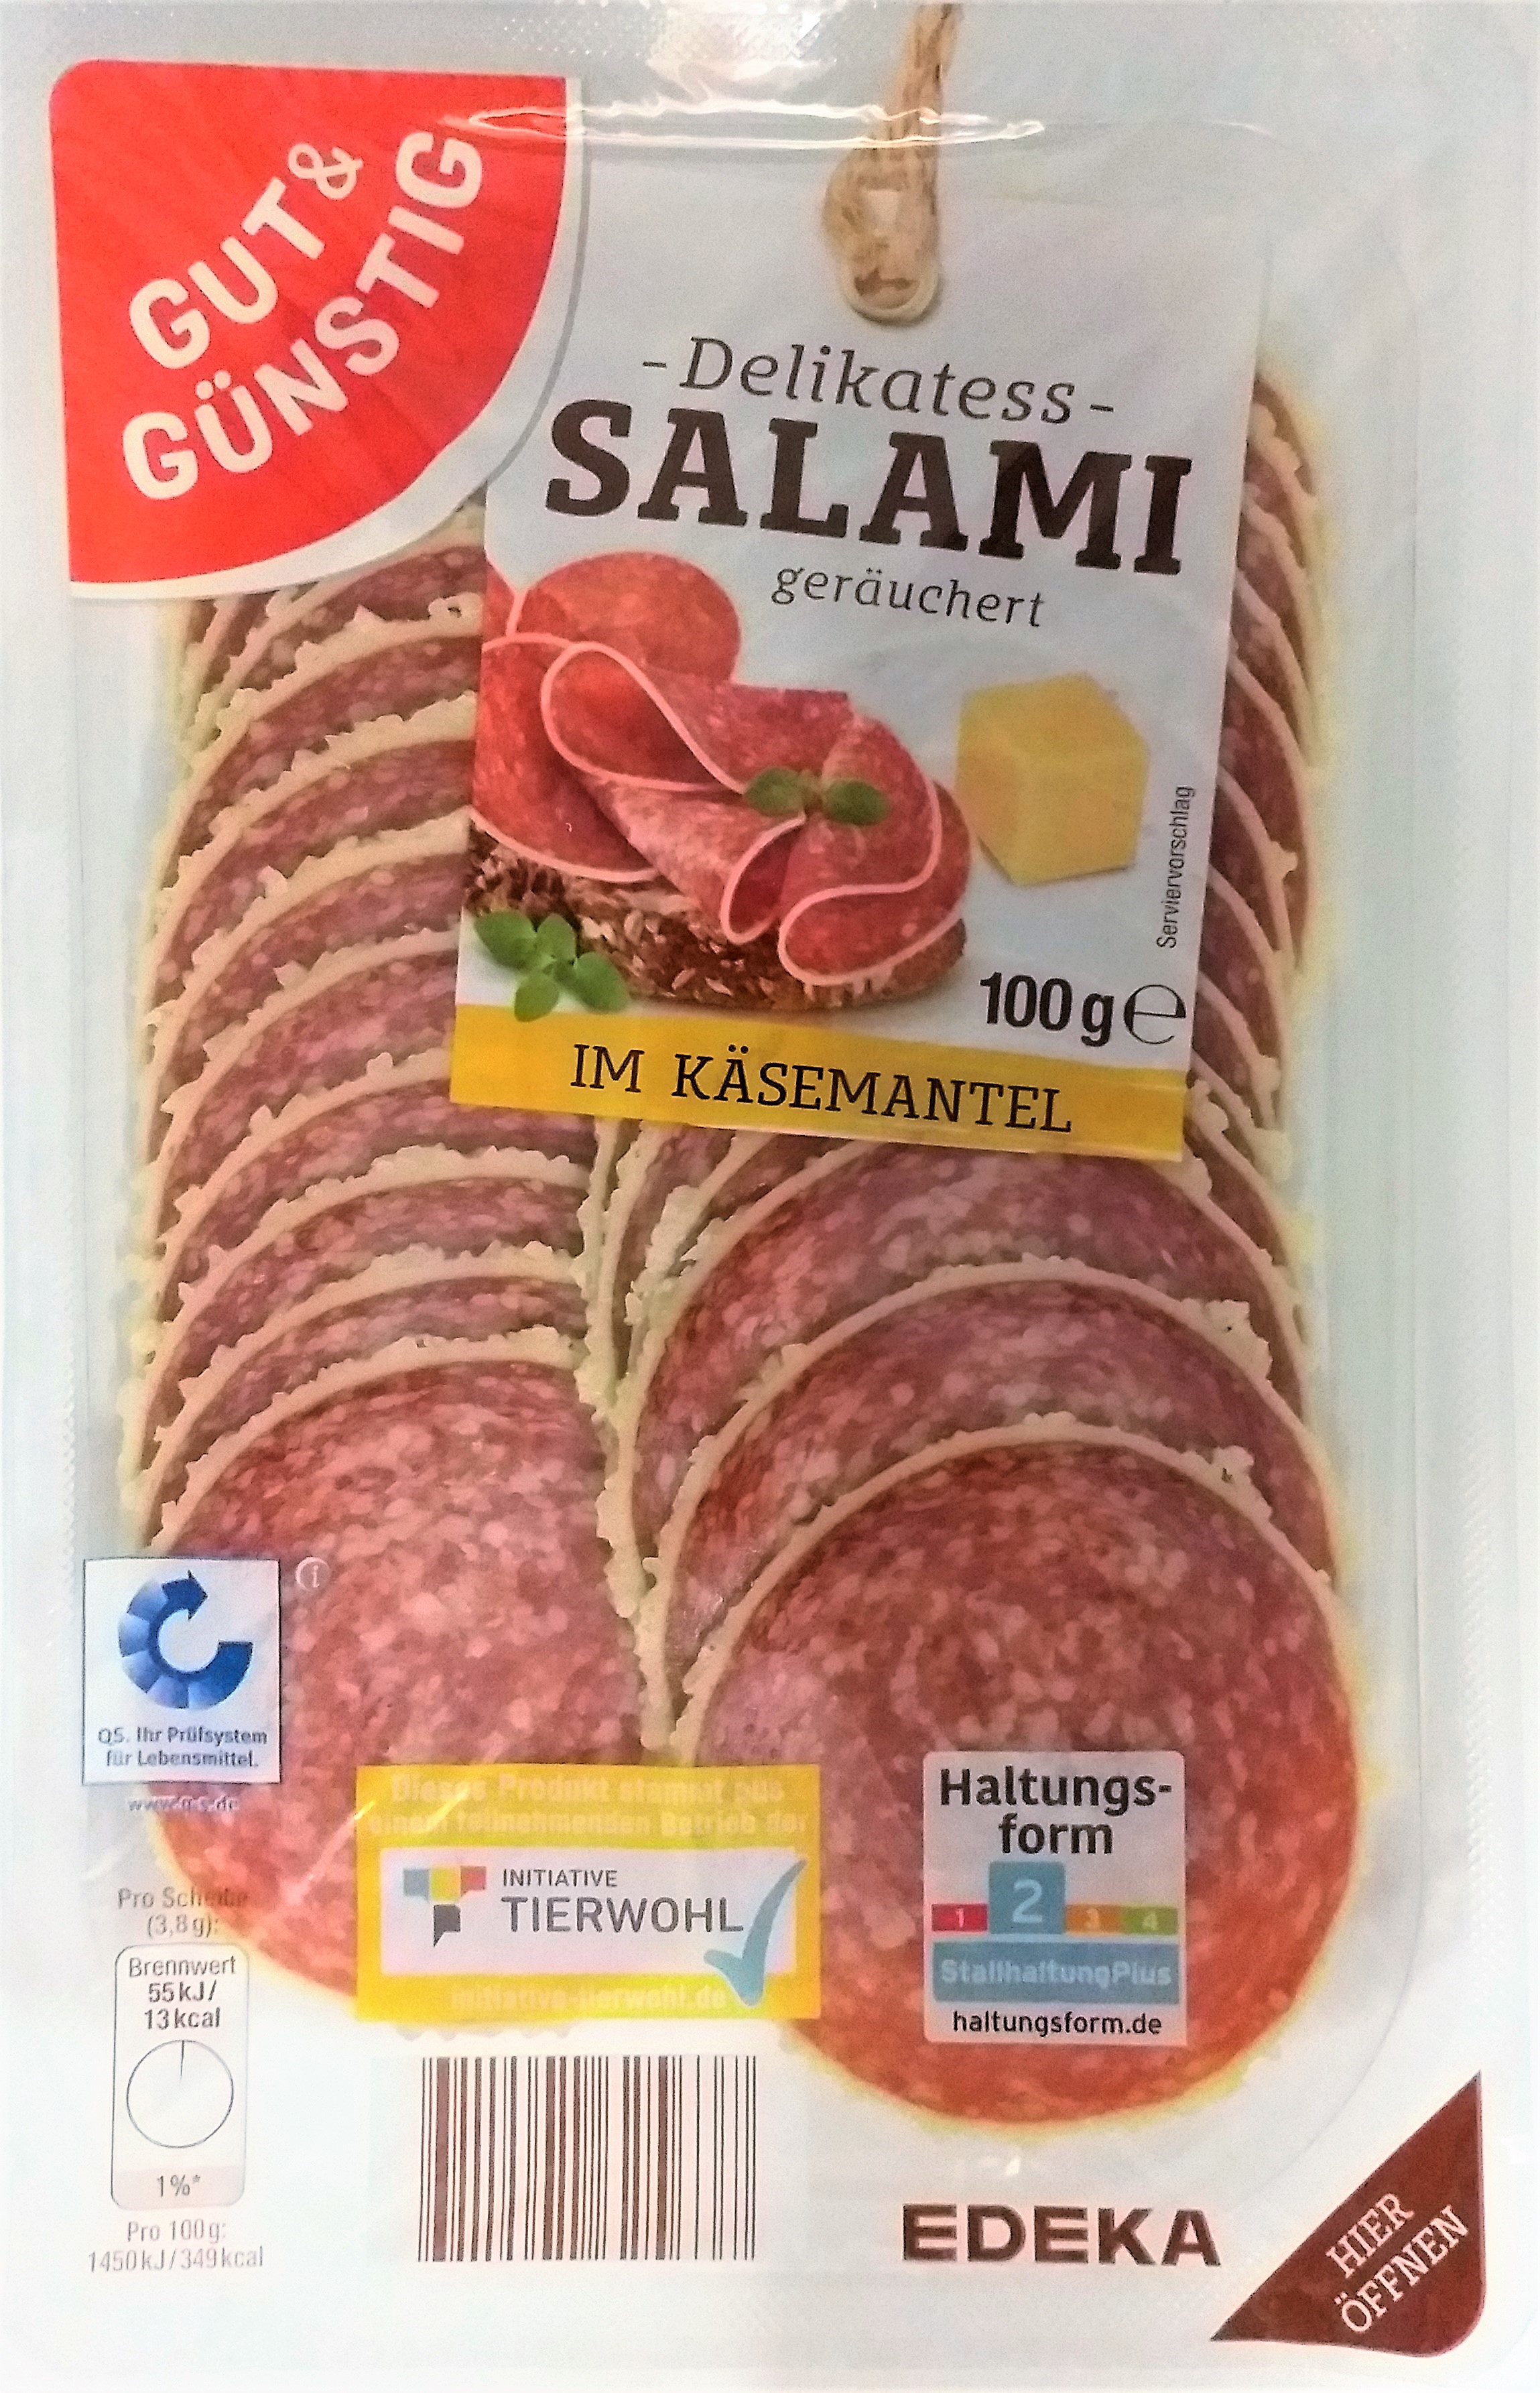 G&G Salami im Käsemantel 100g QS